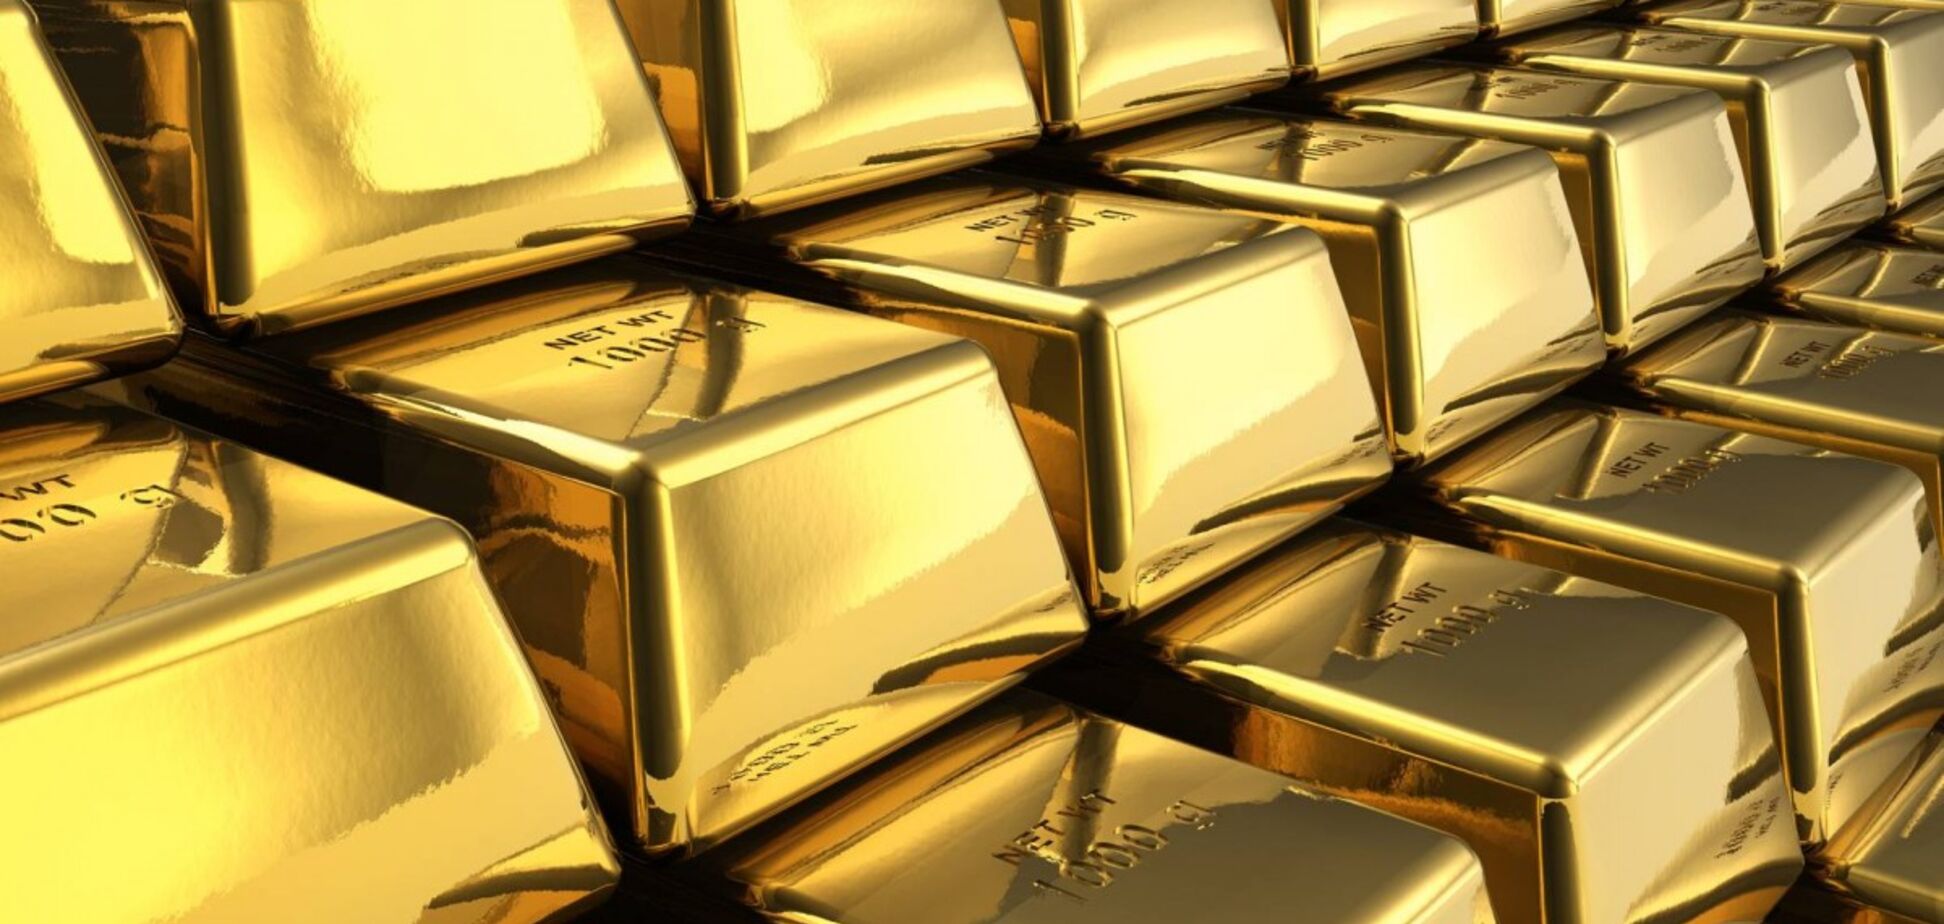 Россия панически скупает золото по всему миру